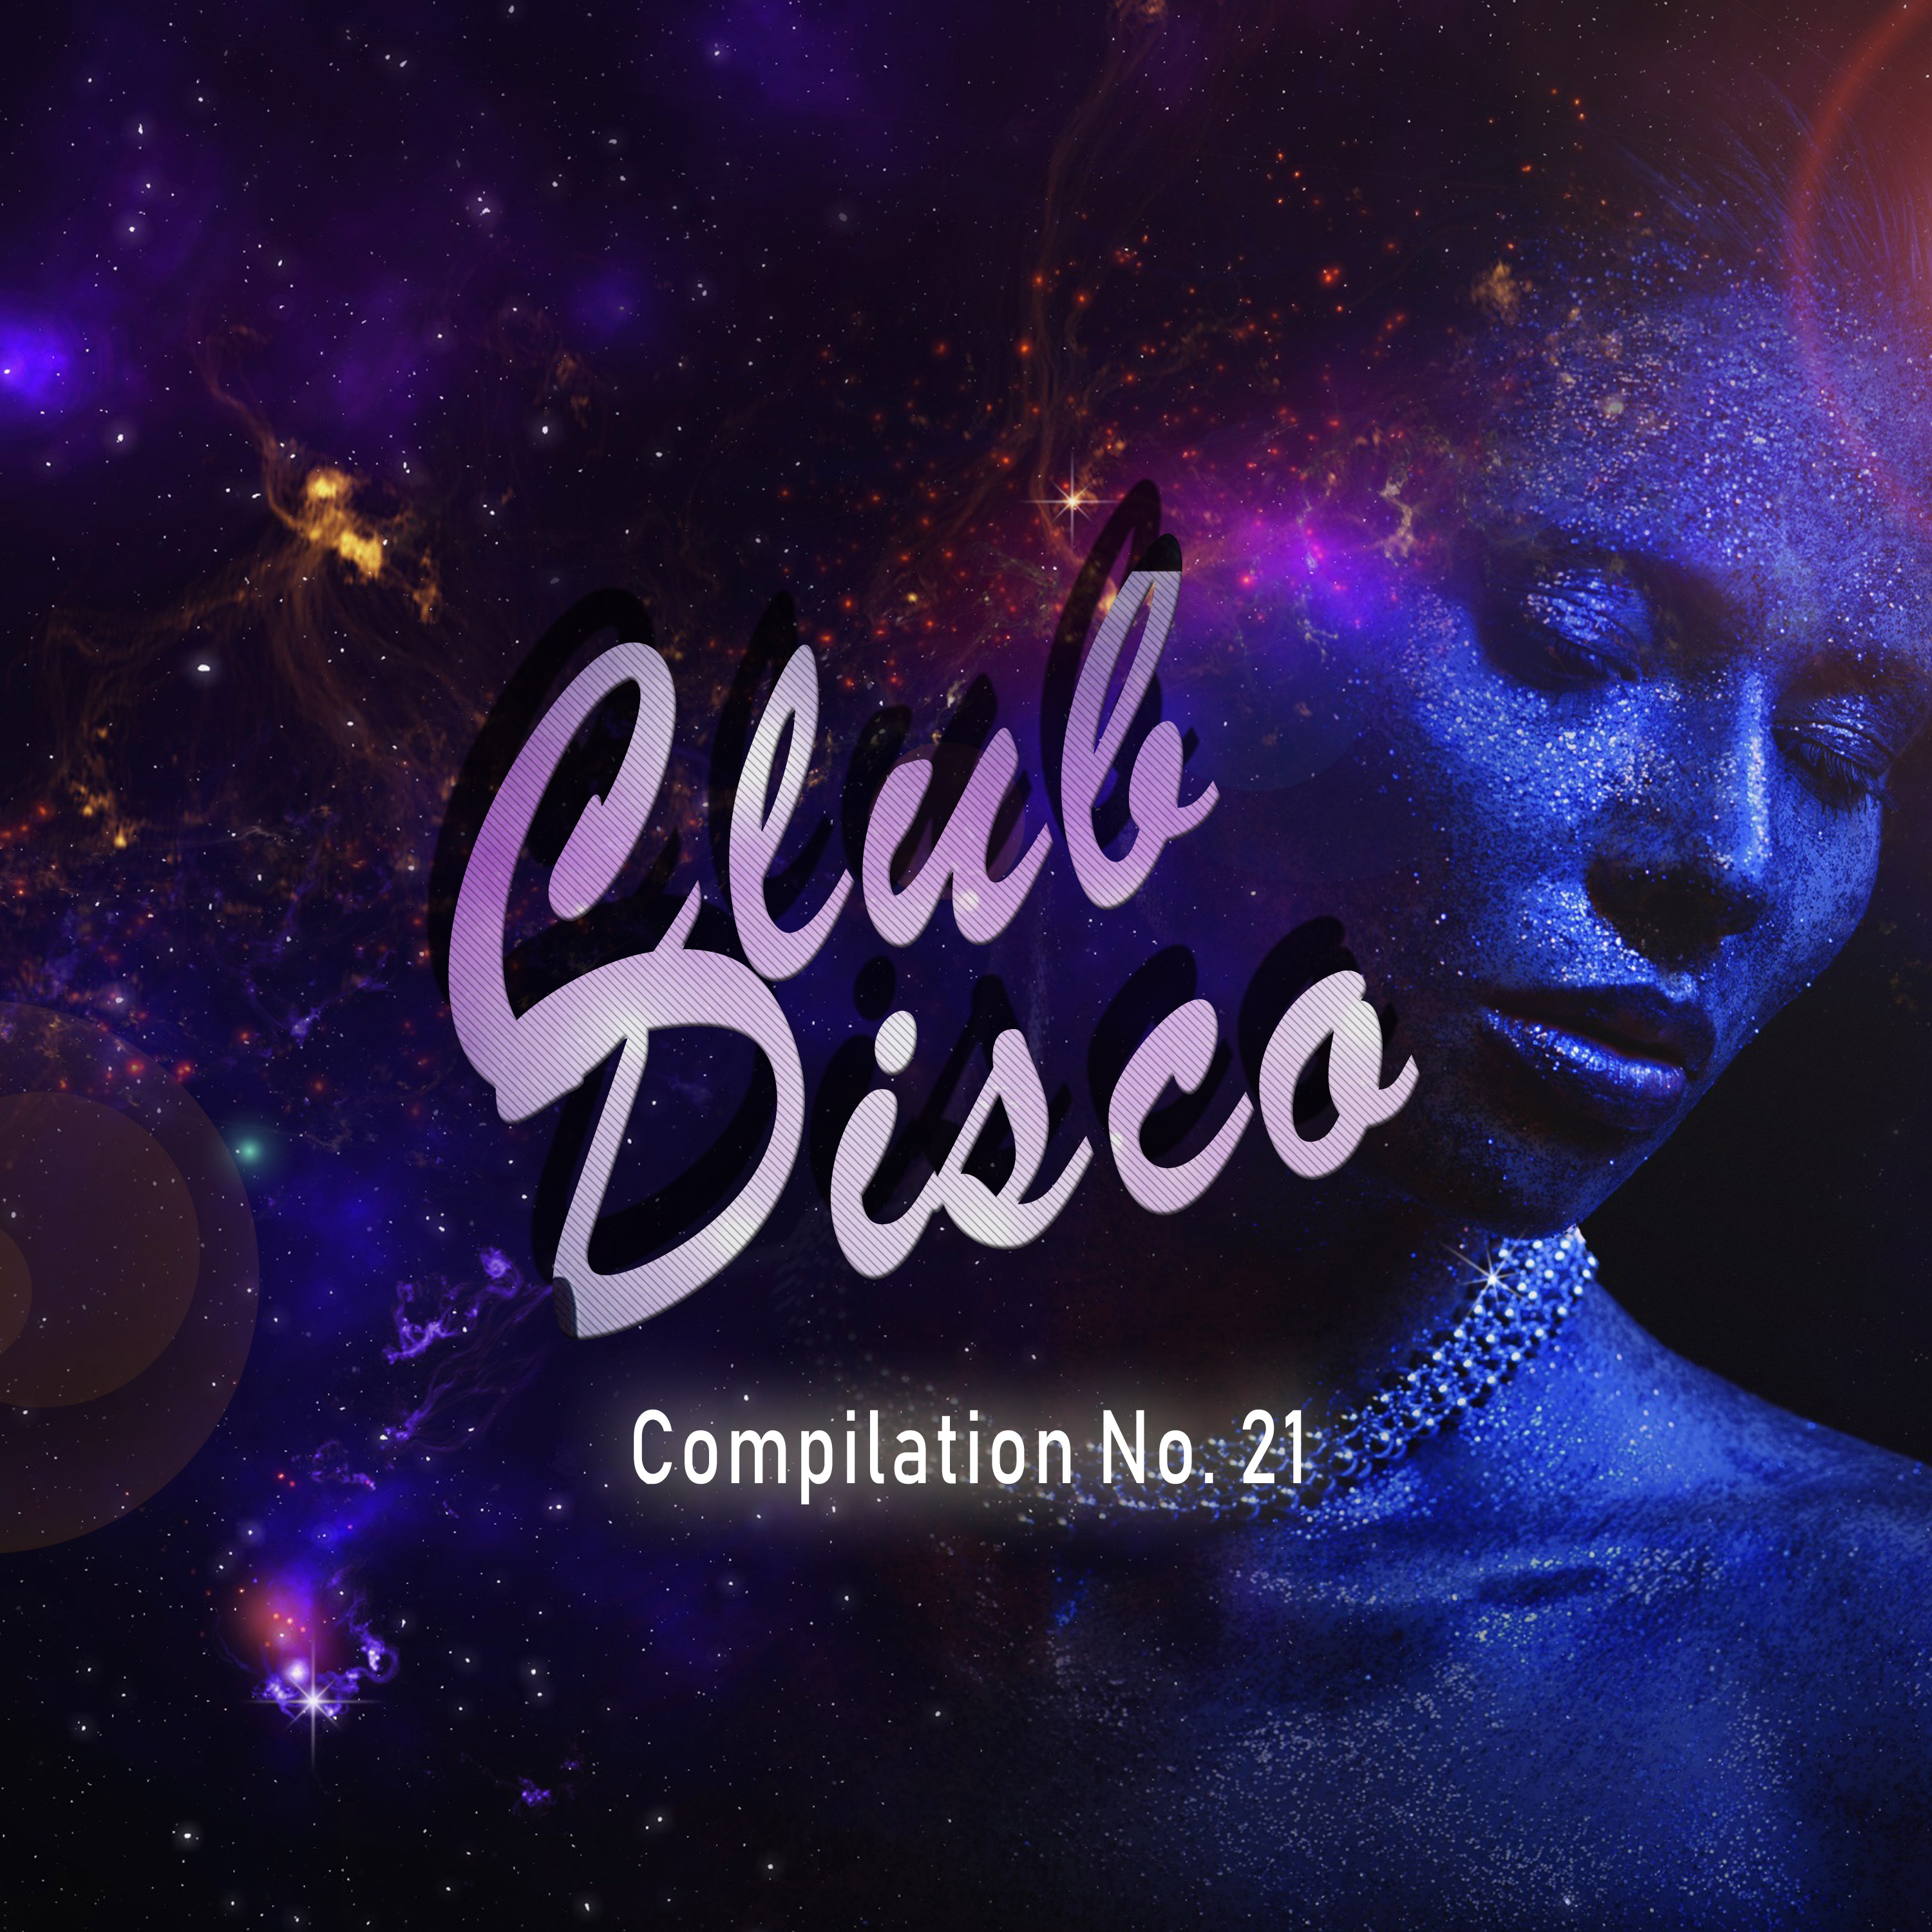 Club Disco Compilation, No. 21